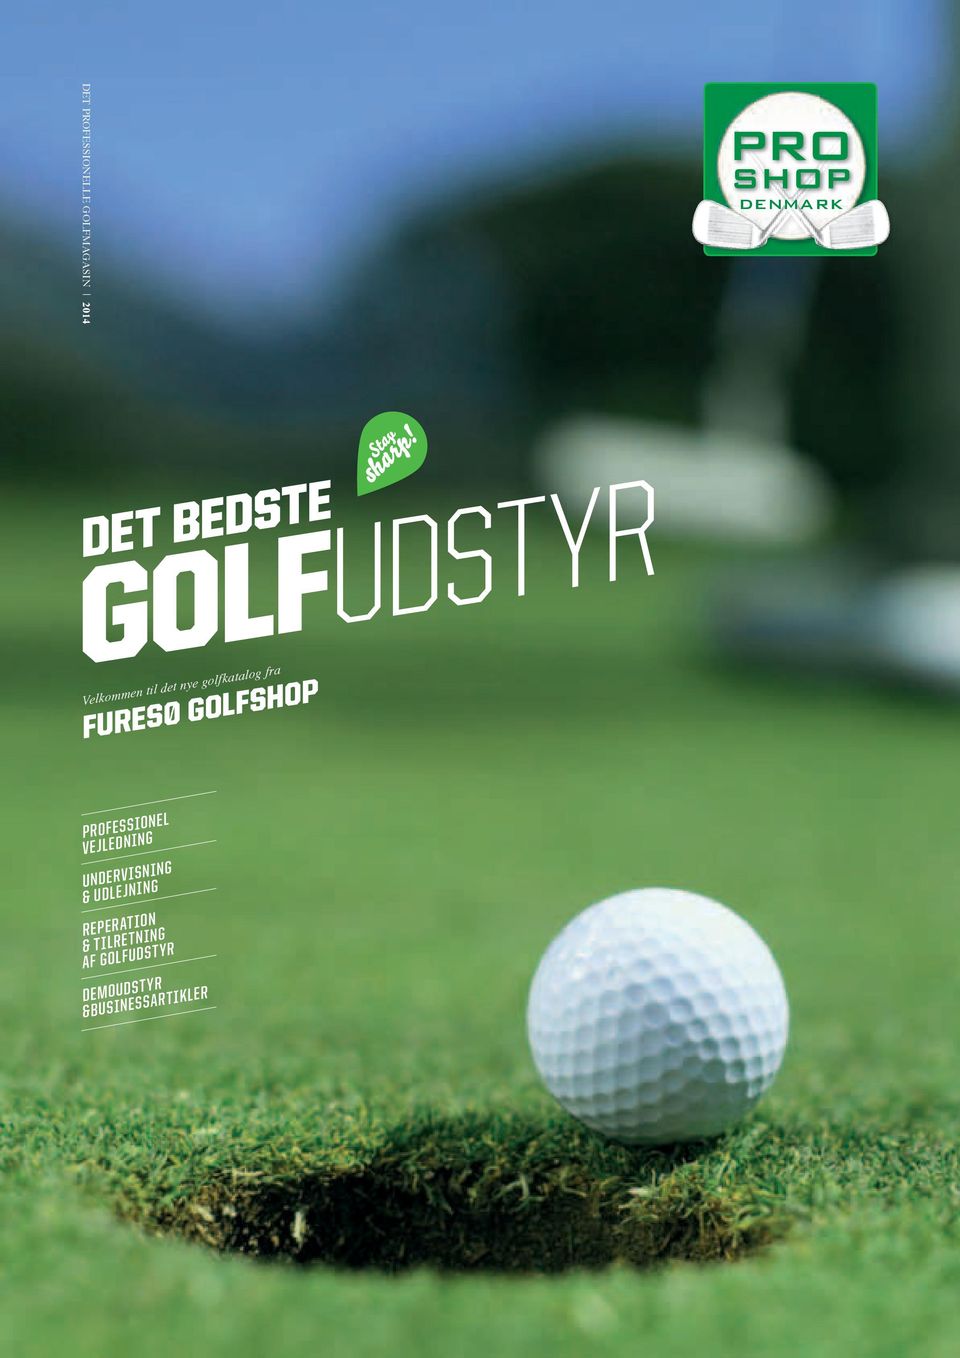 GOLFUDSTYR DET BEDSTE FURESØ GOLFSHOP. sharp! Stay - PDF Free Download